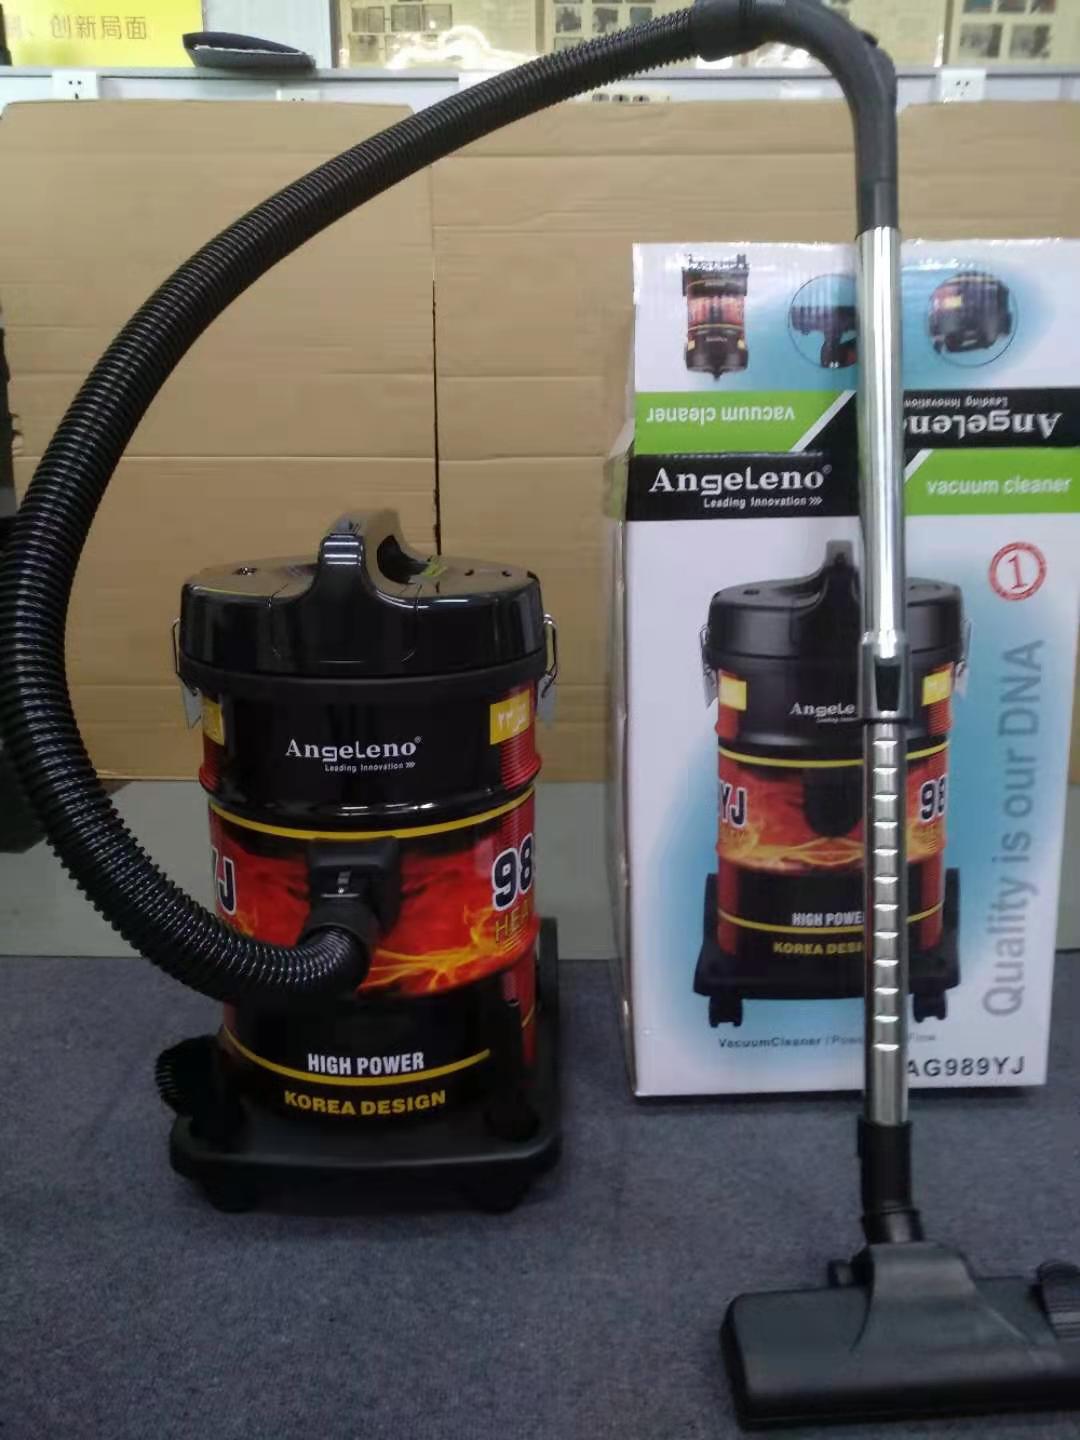 American Professional Vacuum Cleaner